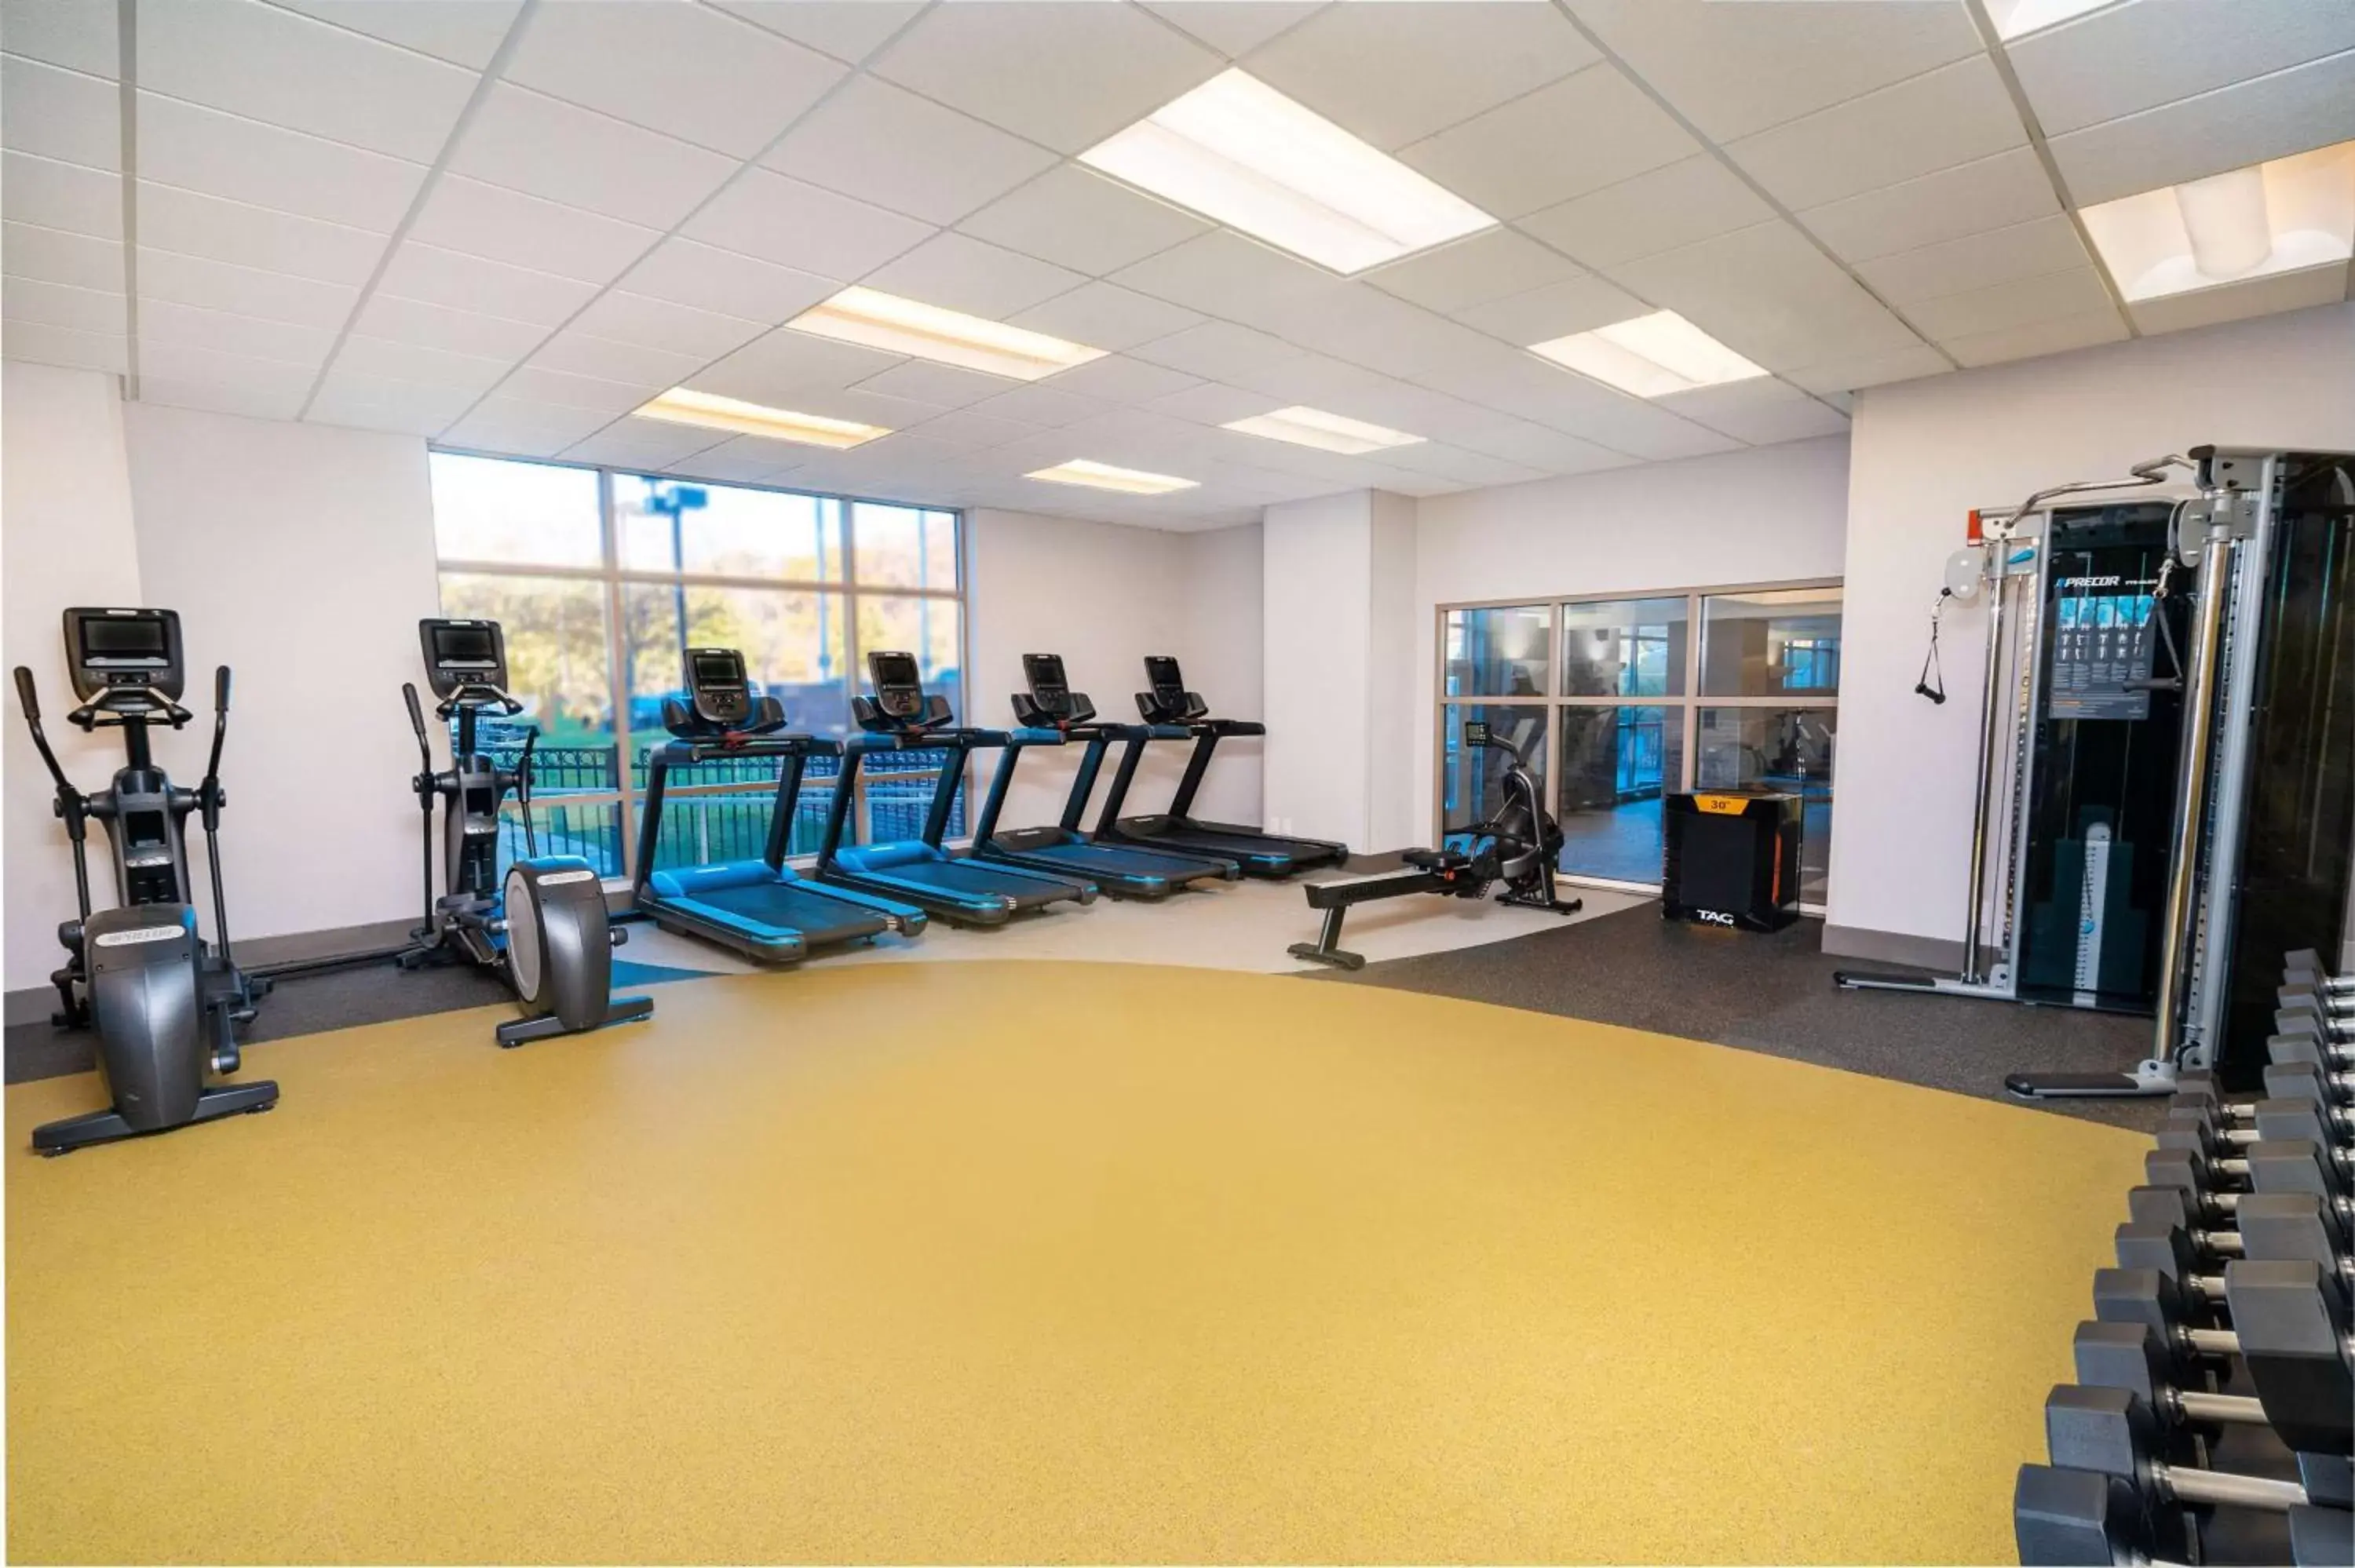 Fitness centre/facilities, Fitness Center/Facilities in Hilton Garden Inn Hanover Arundel Mills, MD